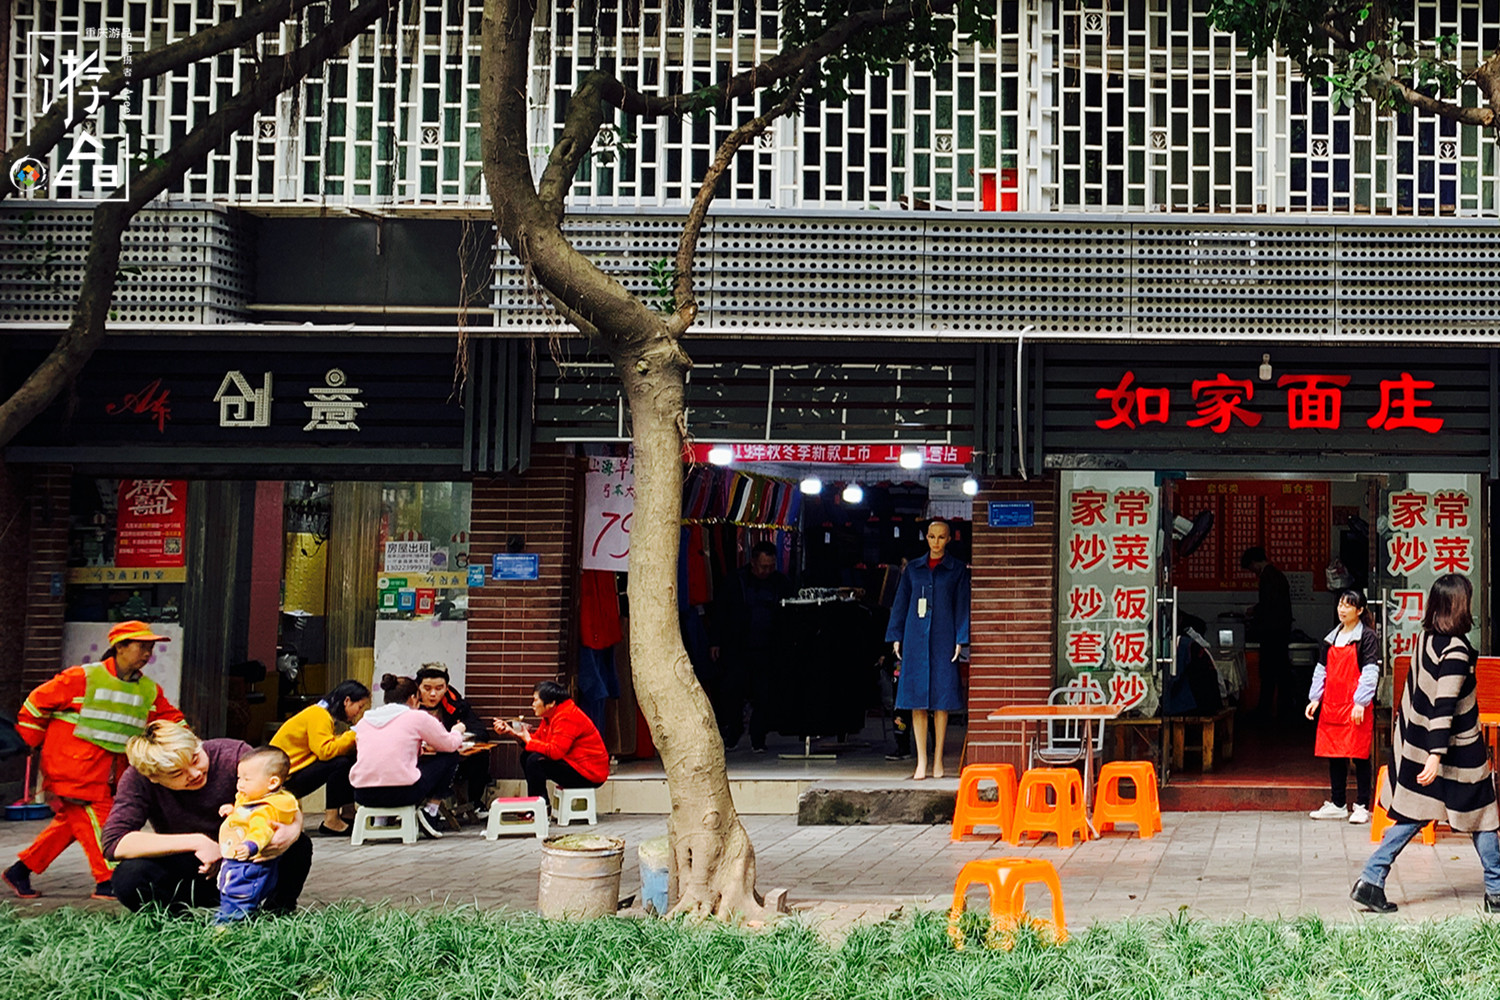 重庆街头餐馆多，面积小但五脏俱全，经营者还都是夫妻